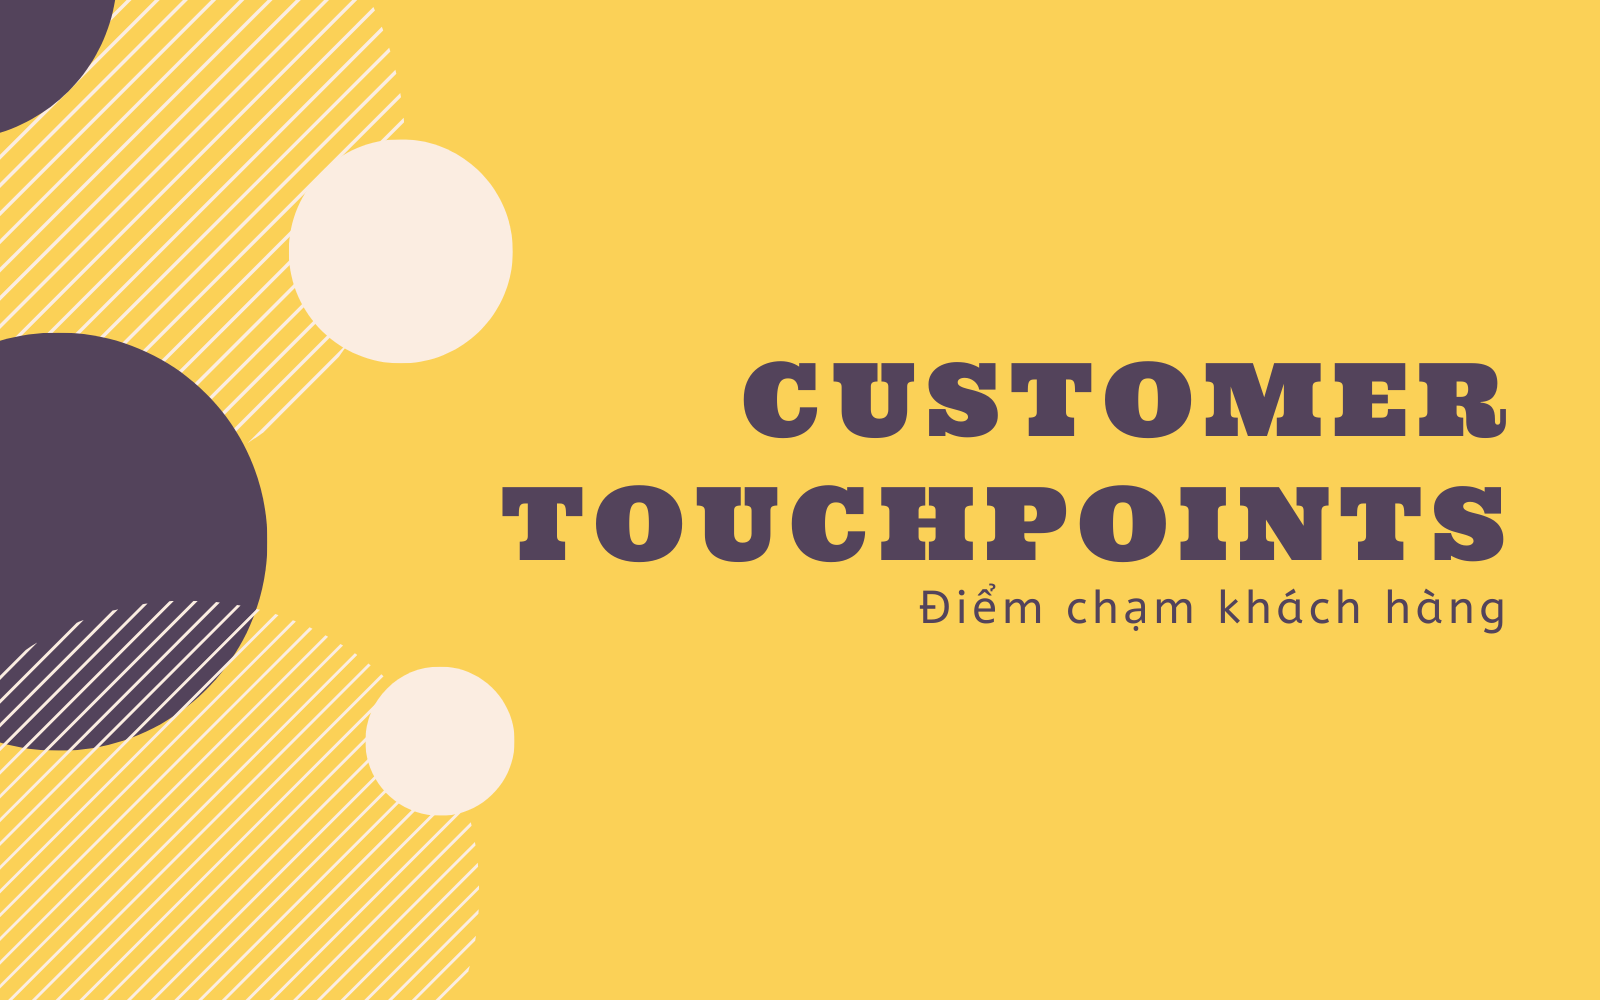 customer touch point là gì